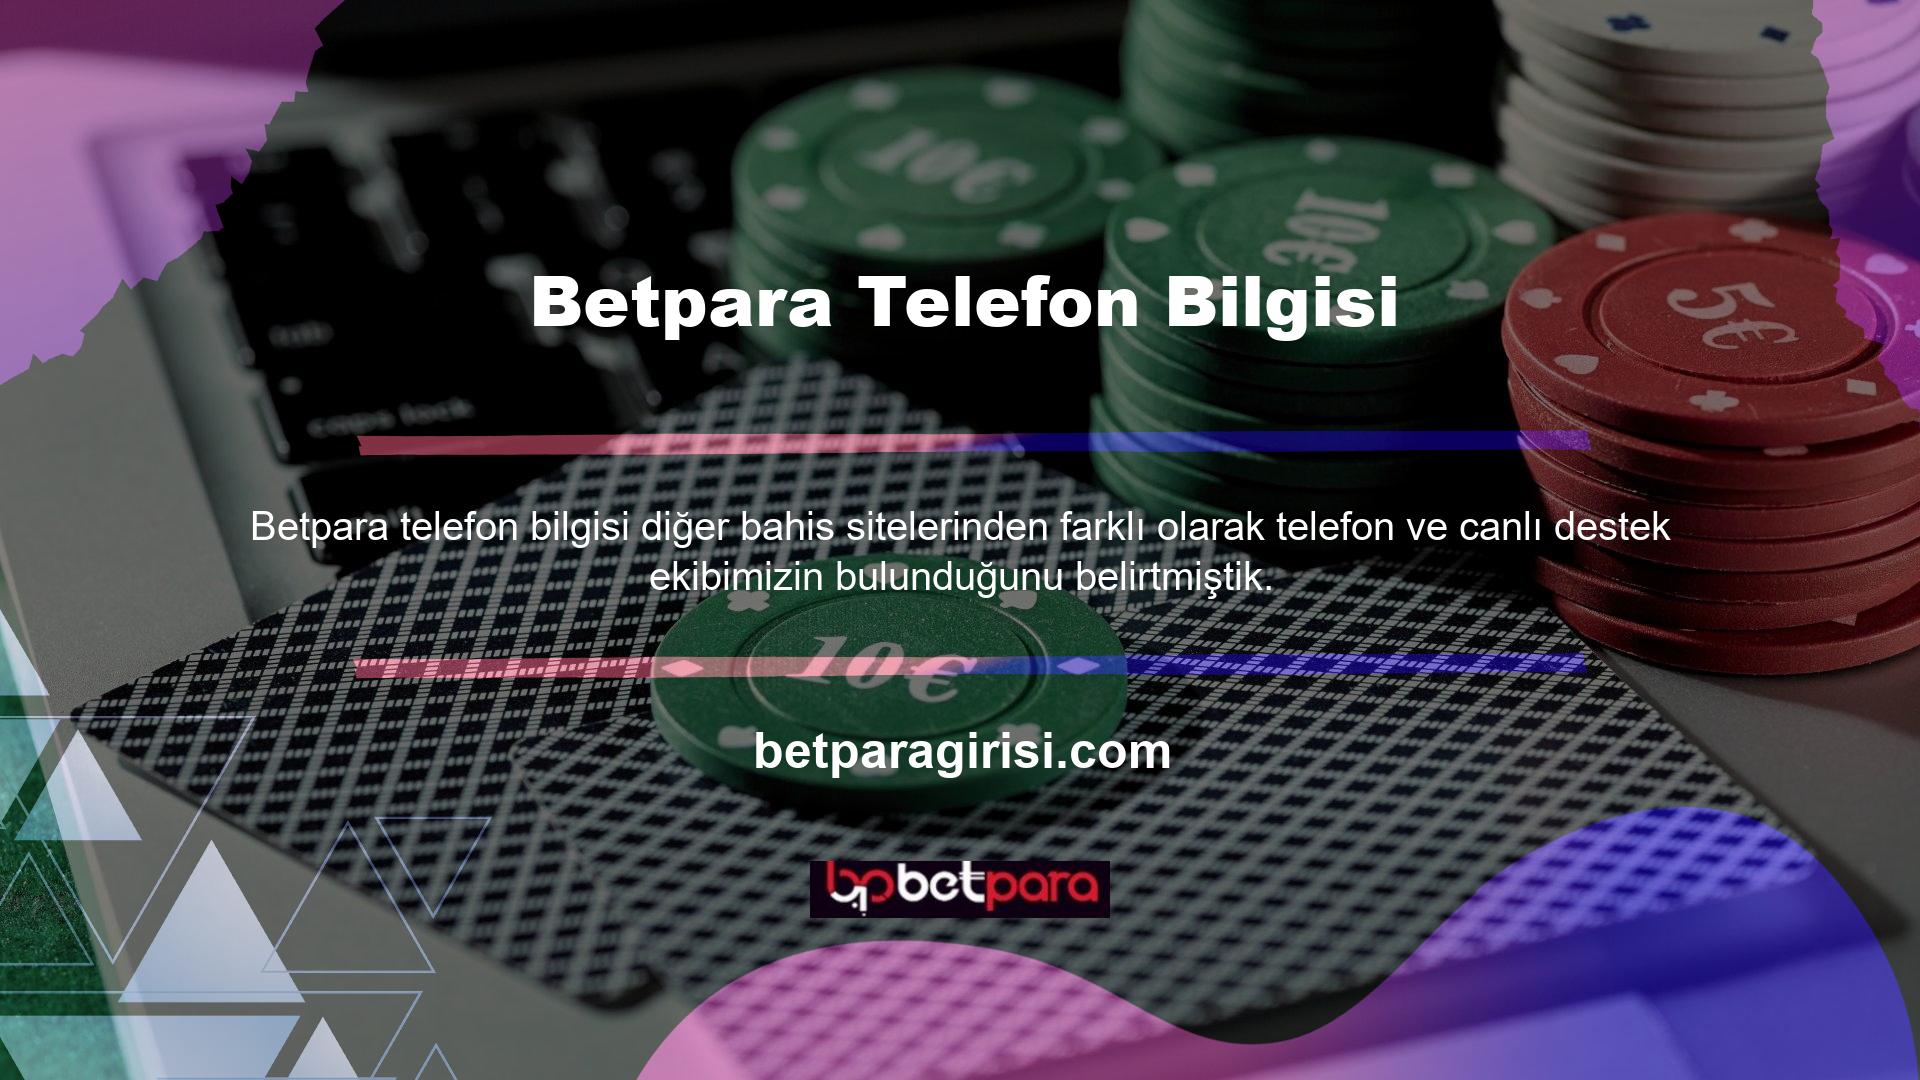 Betpara, geniş bir etkileşim ağını sürdürmekte ve müşteri deneyimi ekibi aracılığıyla kesintisiz hizmet sunmaktadır